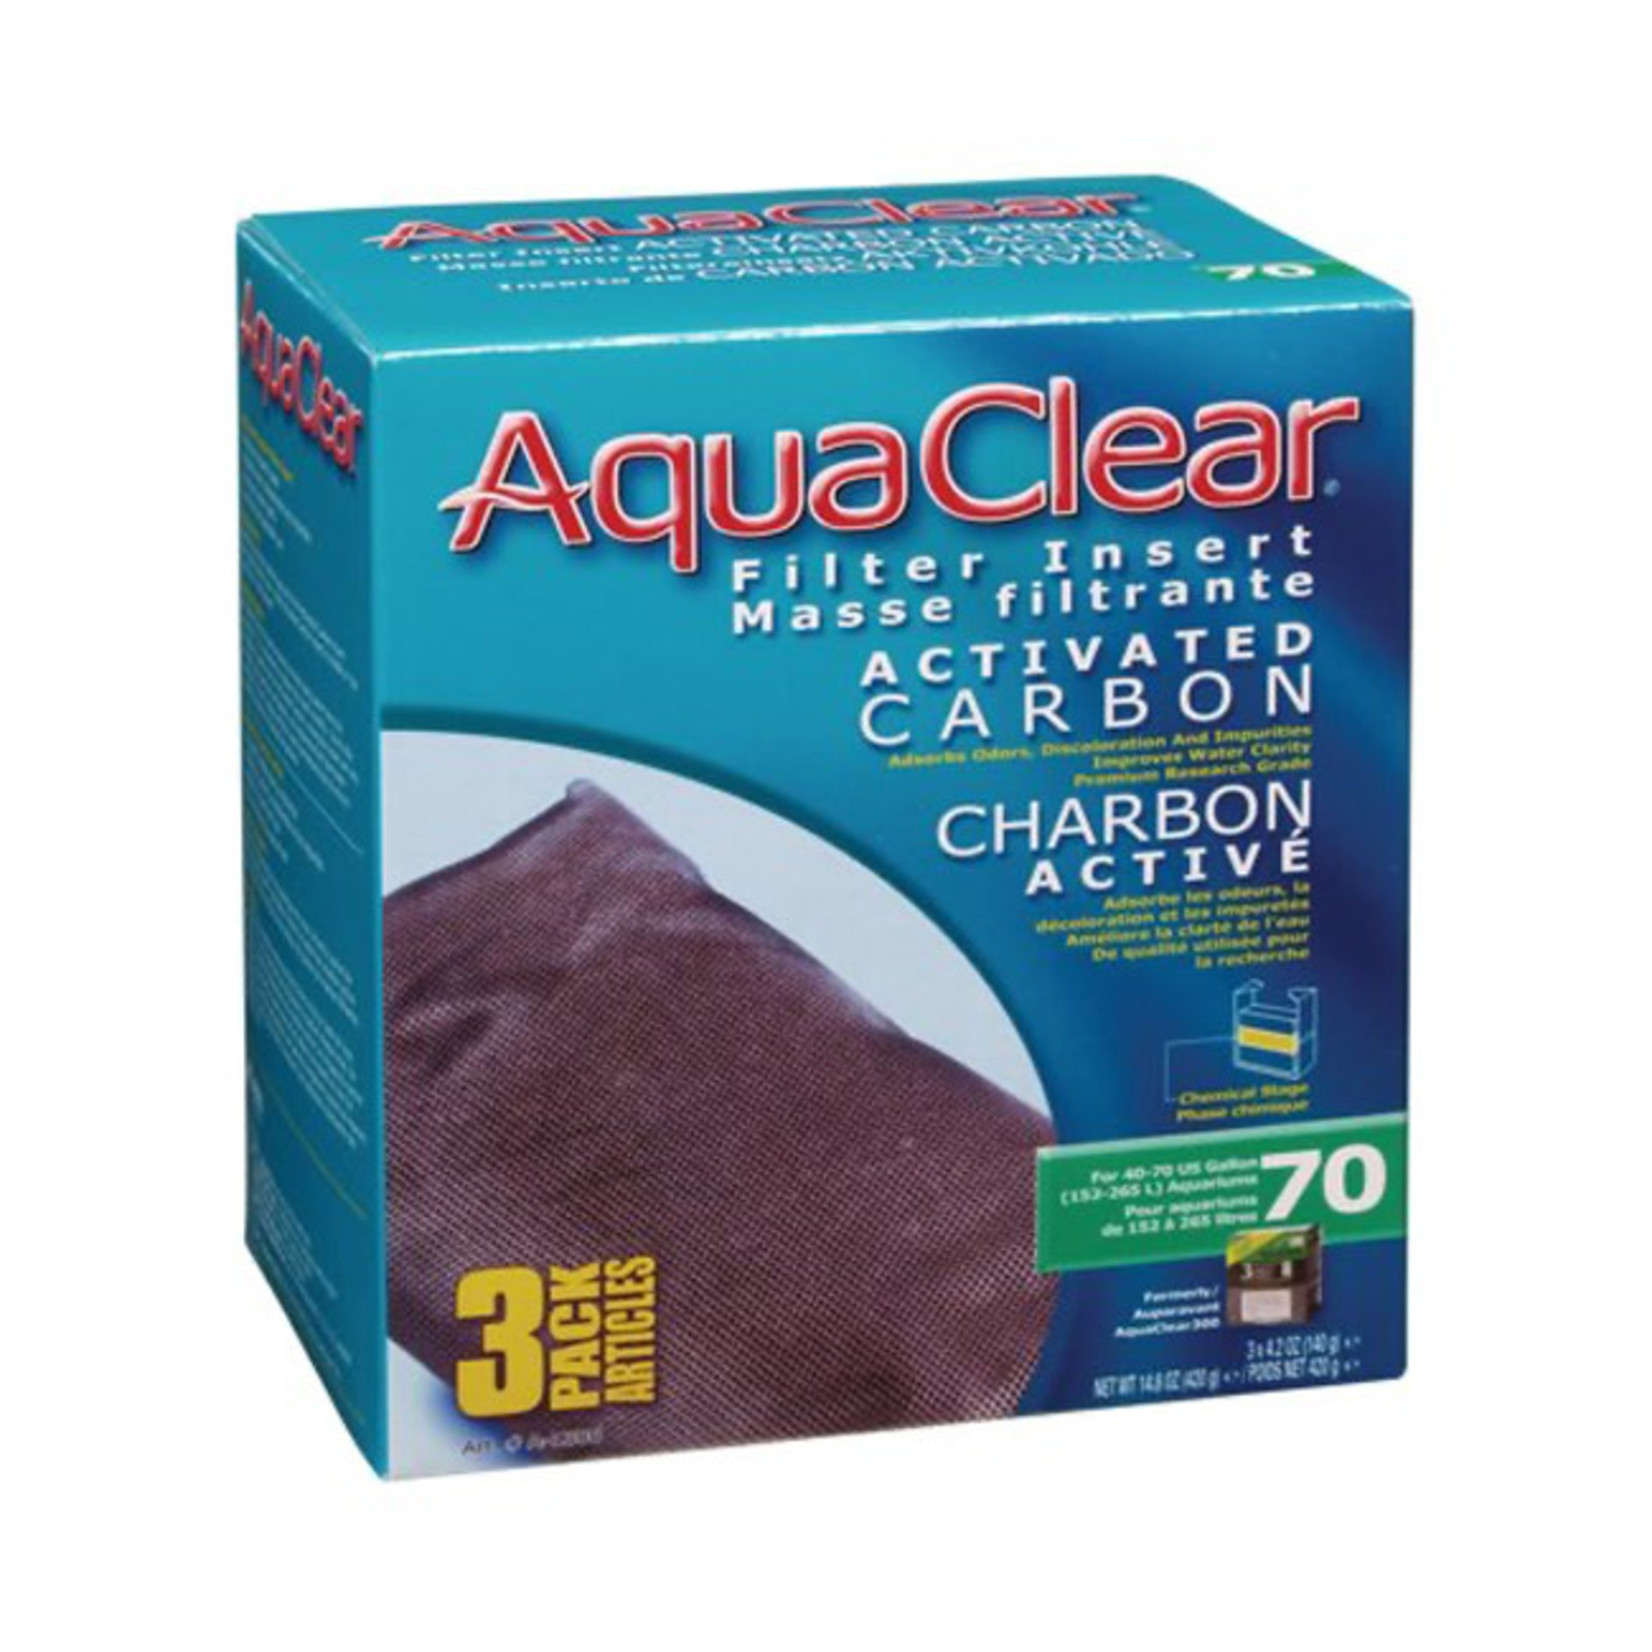 AquaClear AquaClear Filter Insert Activated Carbon